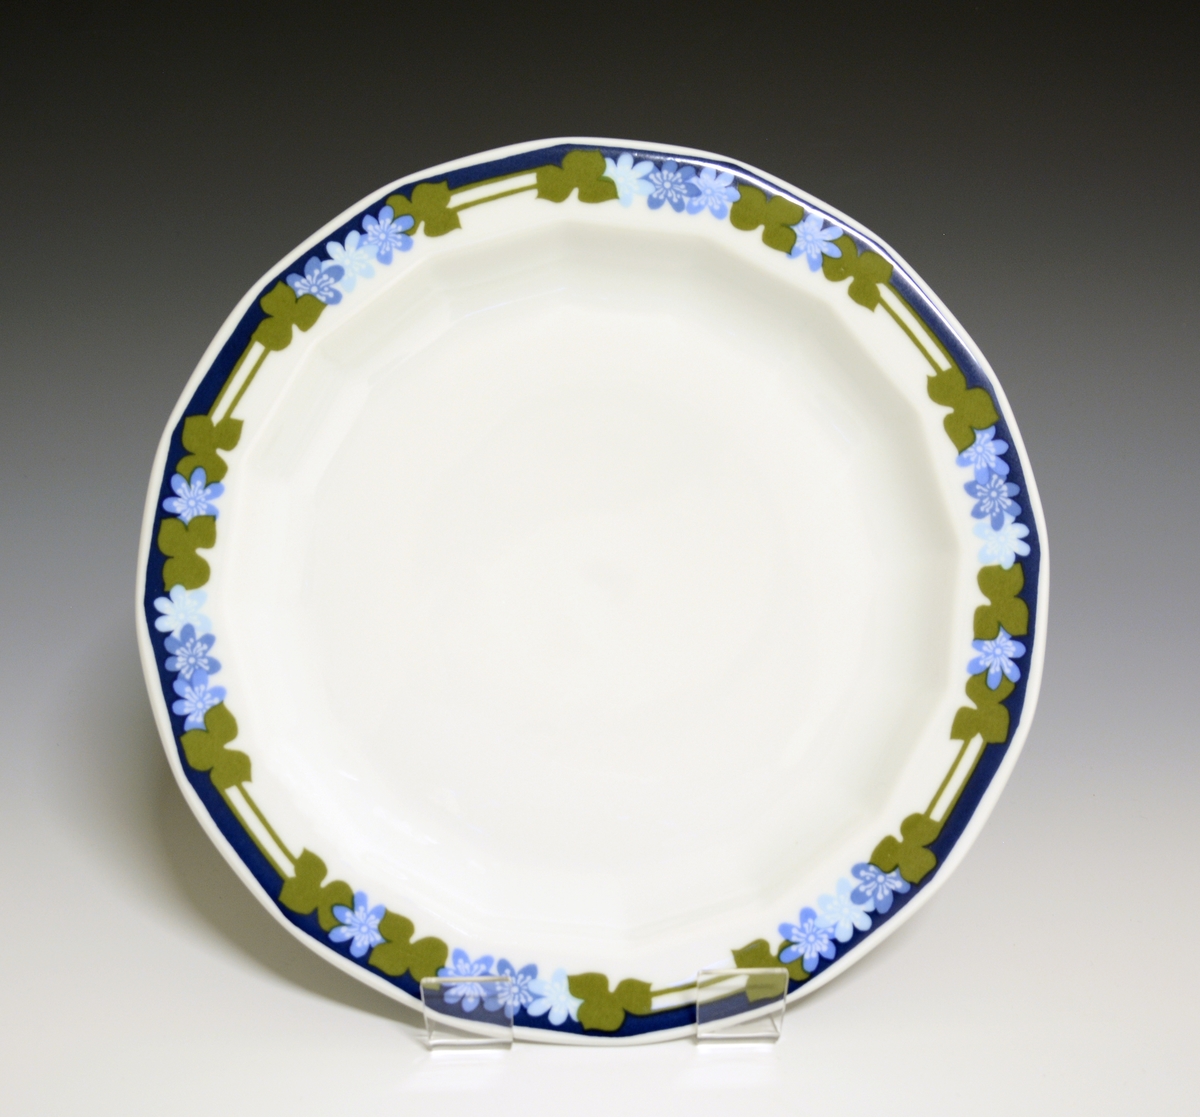 Mangekantet tallerken av porselen med hvit glasur. Dekorert med blåveisdekor.
Modell: Octavia, tegnet av Grete Rønning i 1977.
Dekor: Blå Anemone